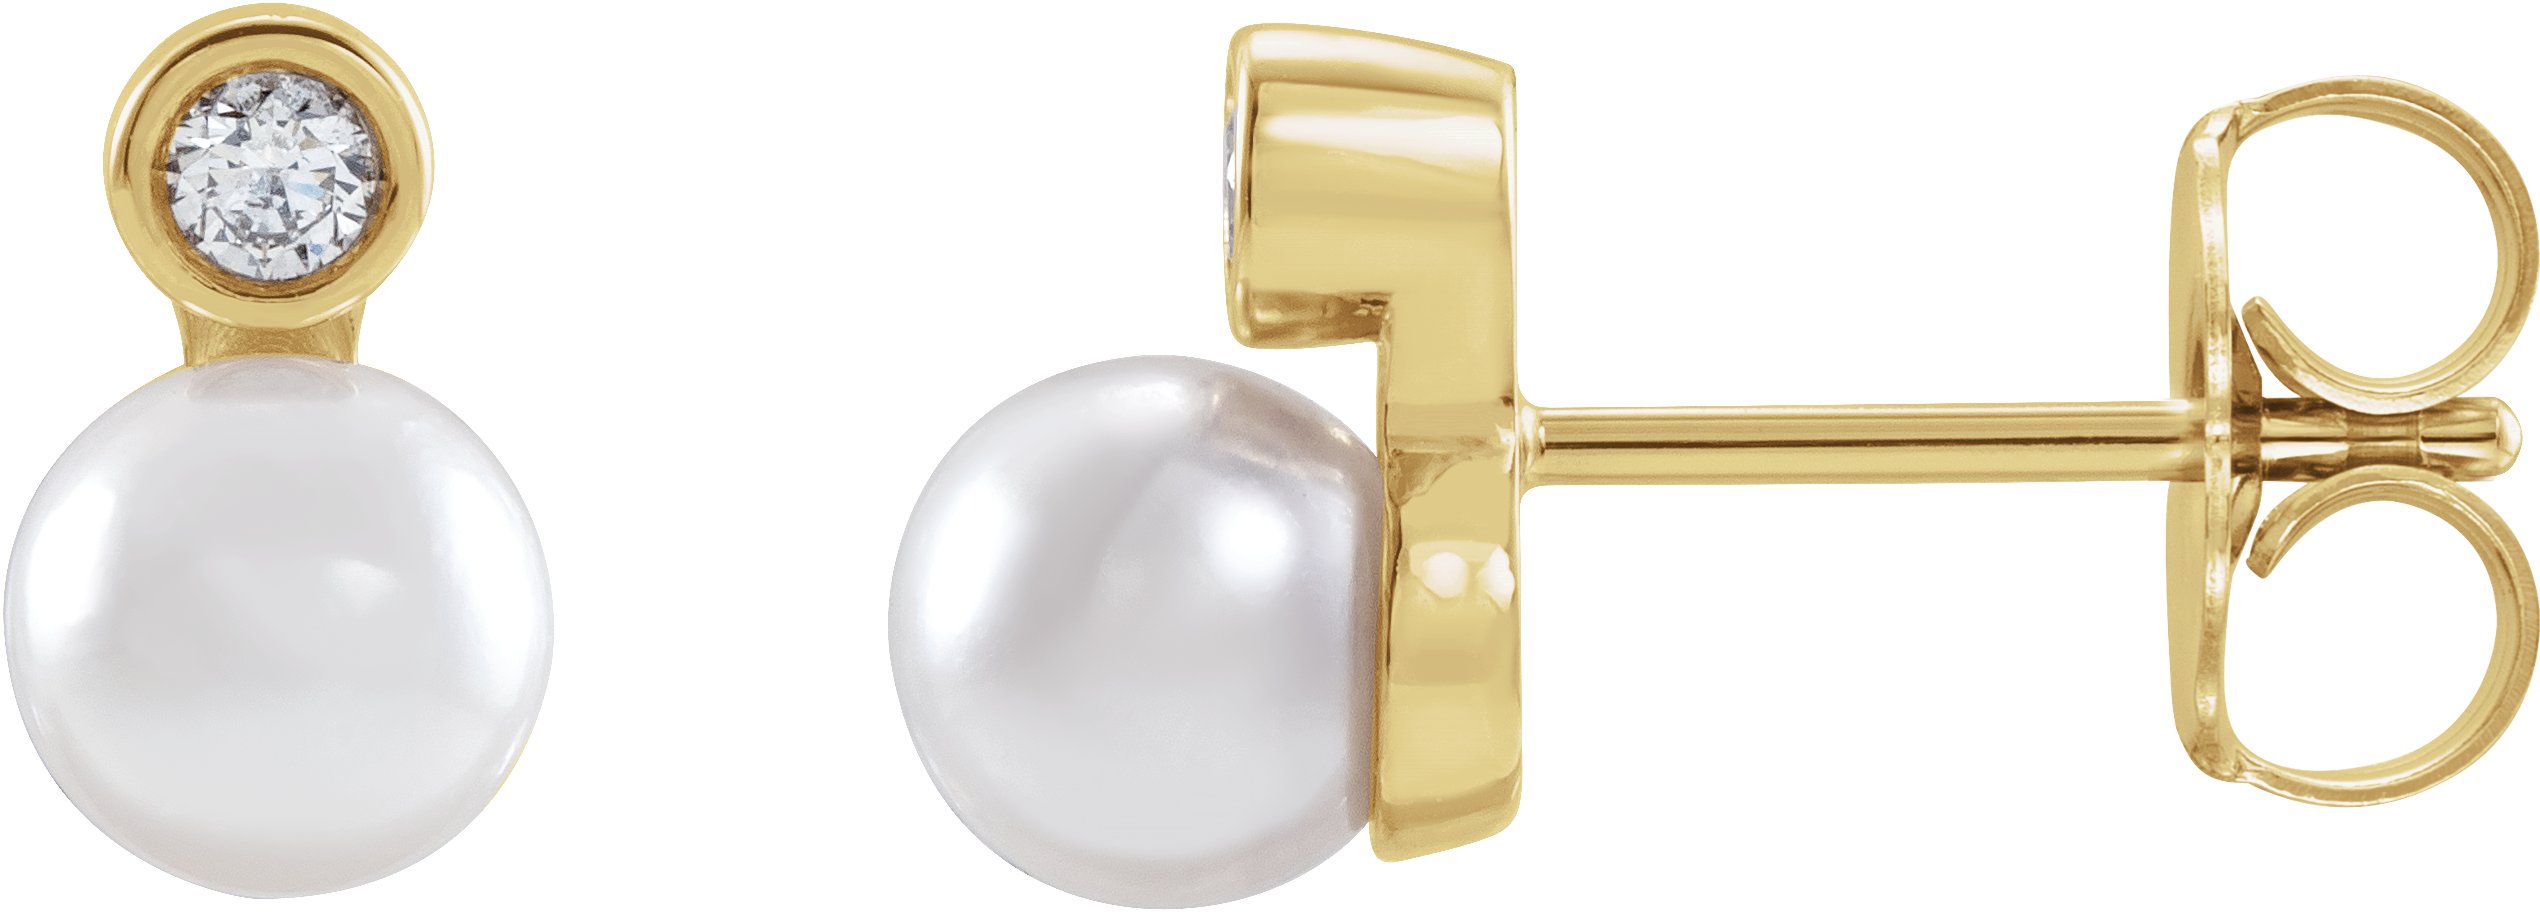 14K White .06 CTW Natural Diamond Semi-Set Earrings for 5-5.5 mm Pearls